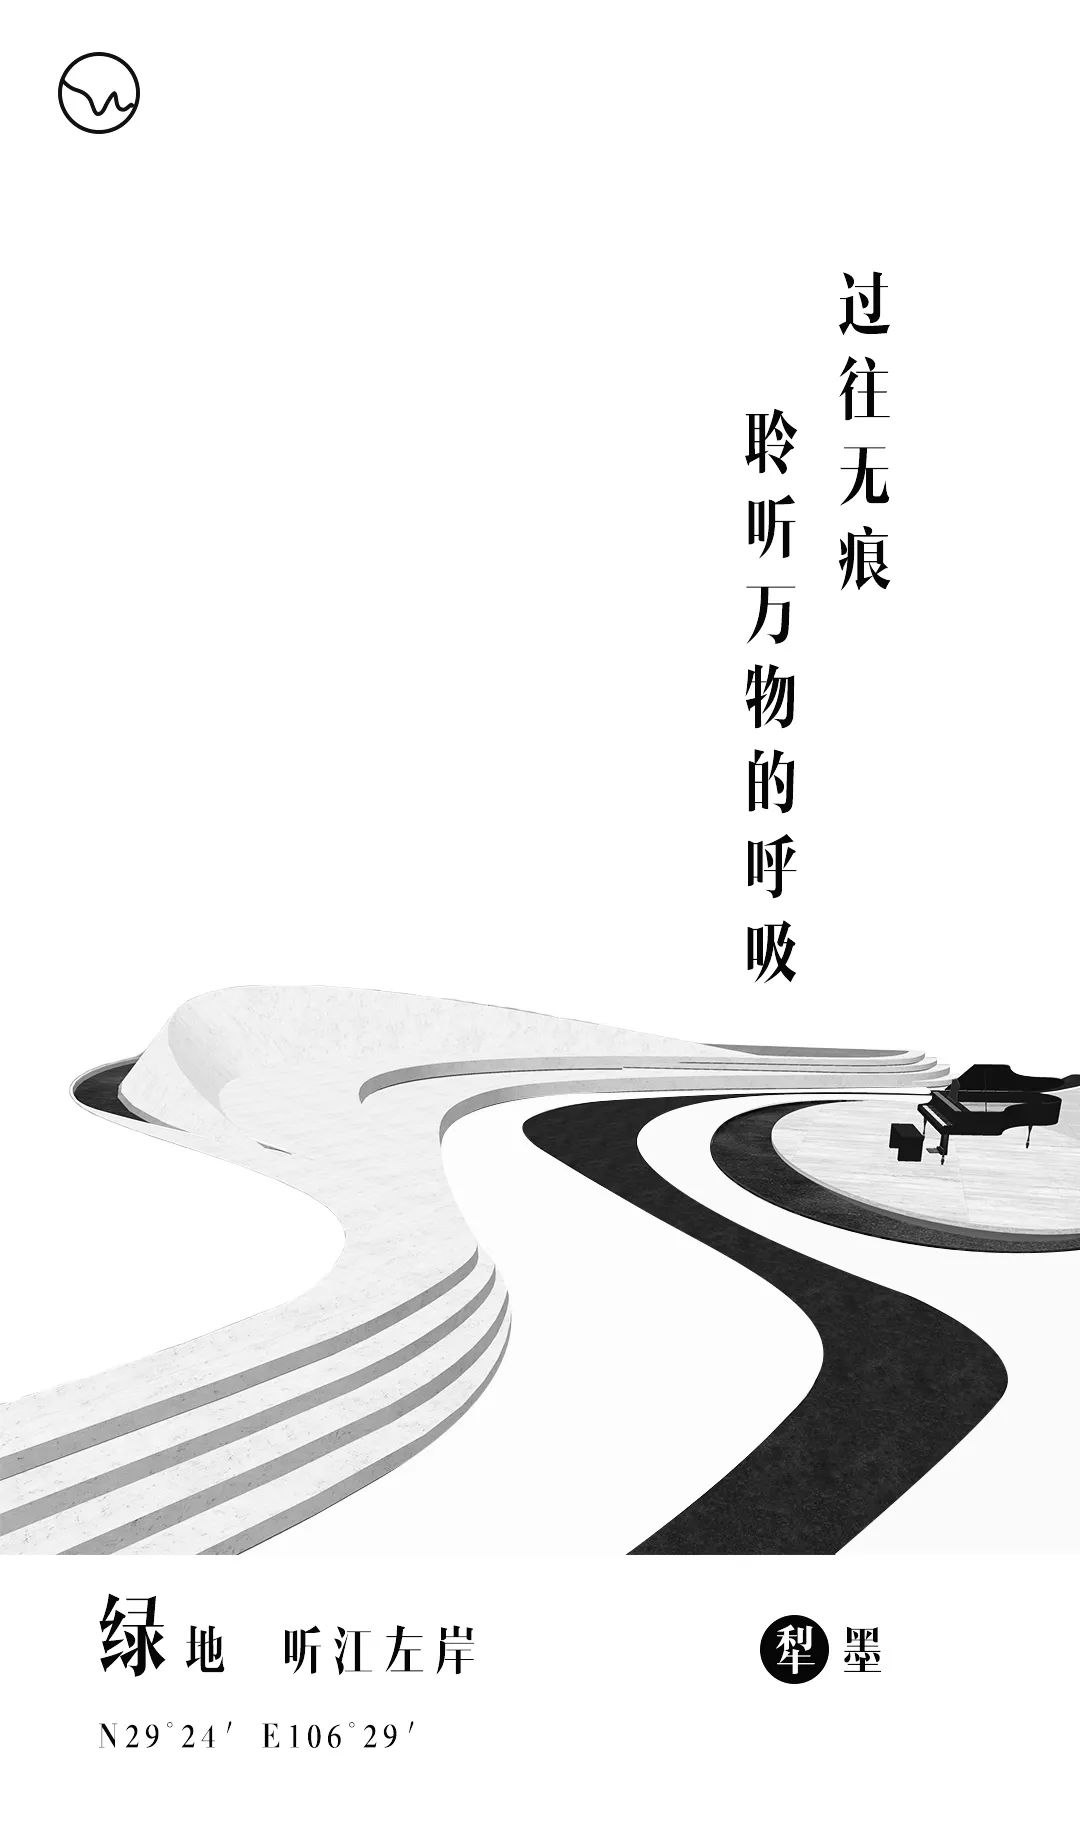 重庆绿地 · 听江左岸景观设计/犁墨景观